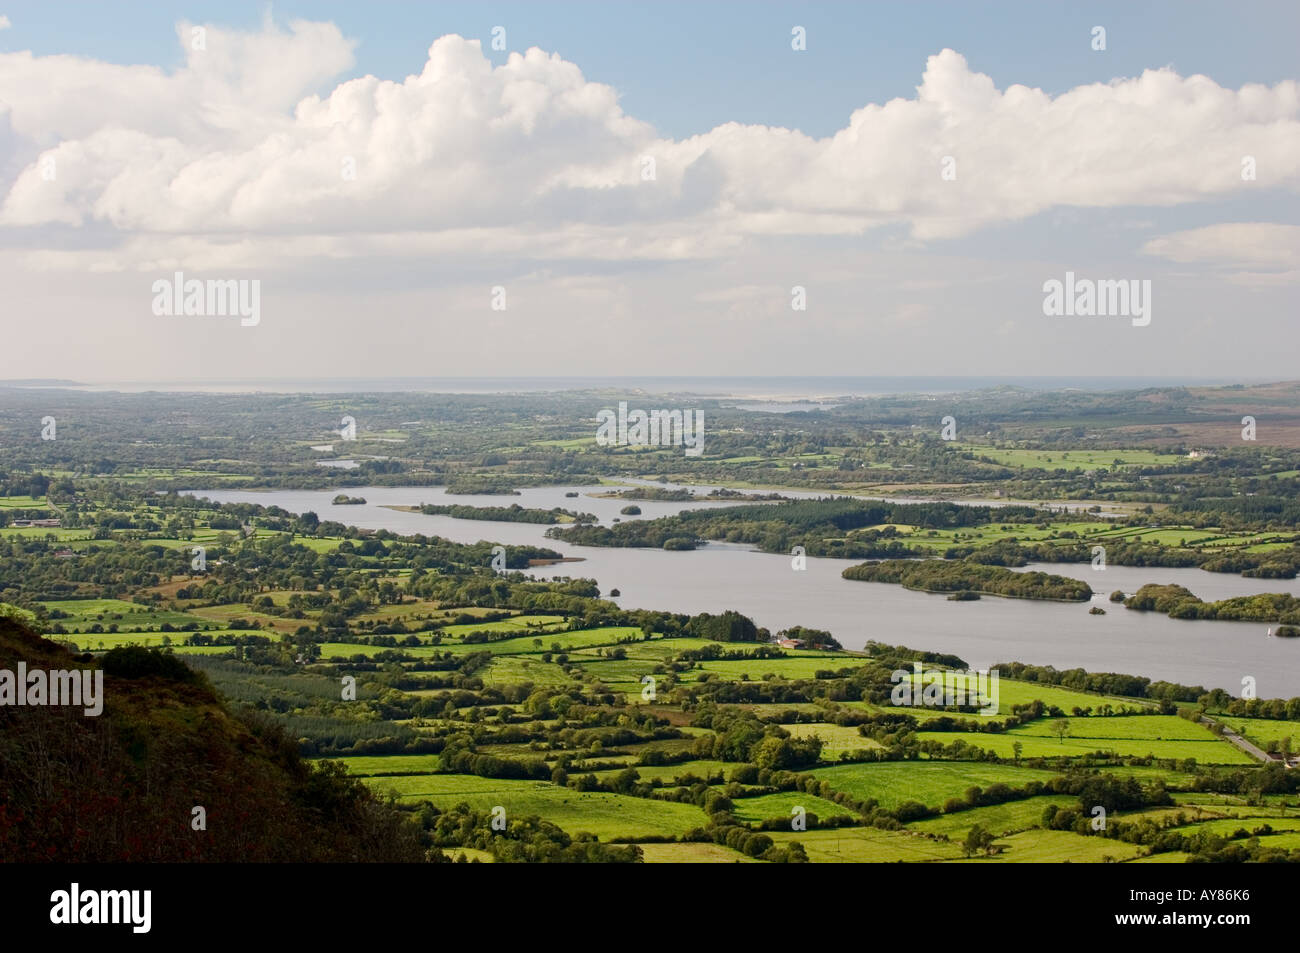 Westen über unteren Lough Erne von Klippen von Magho County Fermanagh in der Nähe von Beleek Enniskillen in Richtung Donegal Bay. Irland. Stockfoto